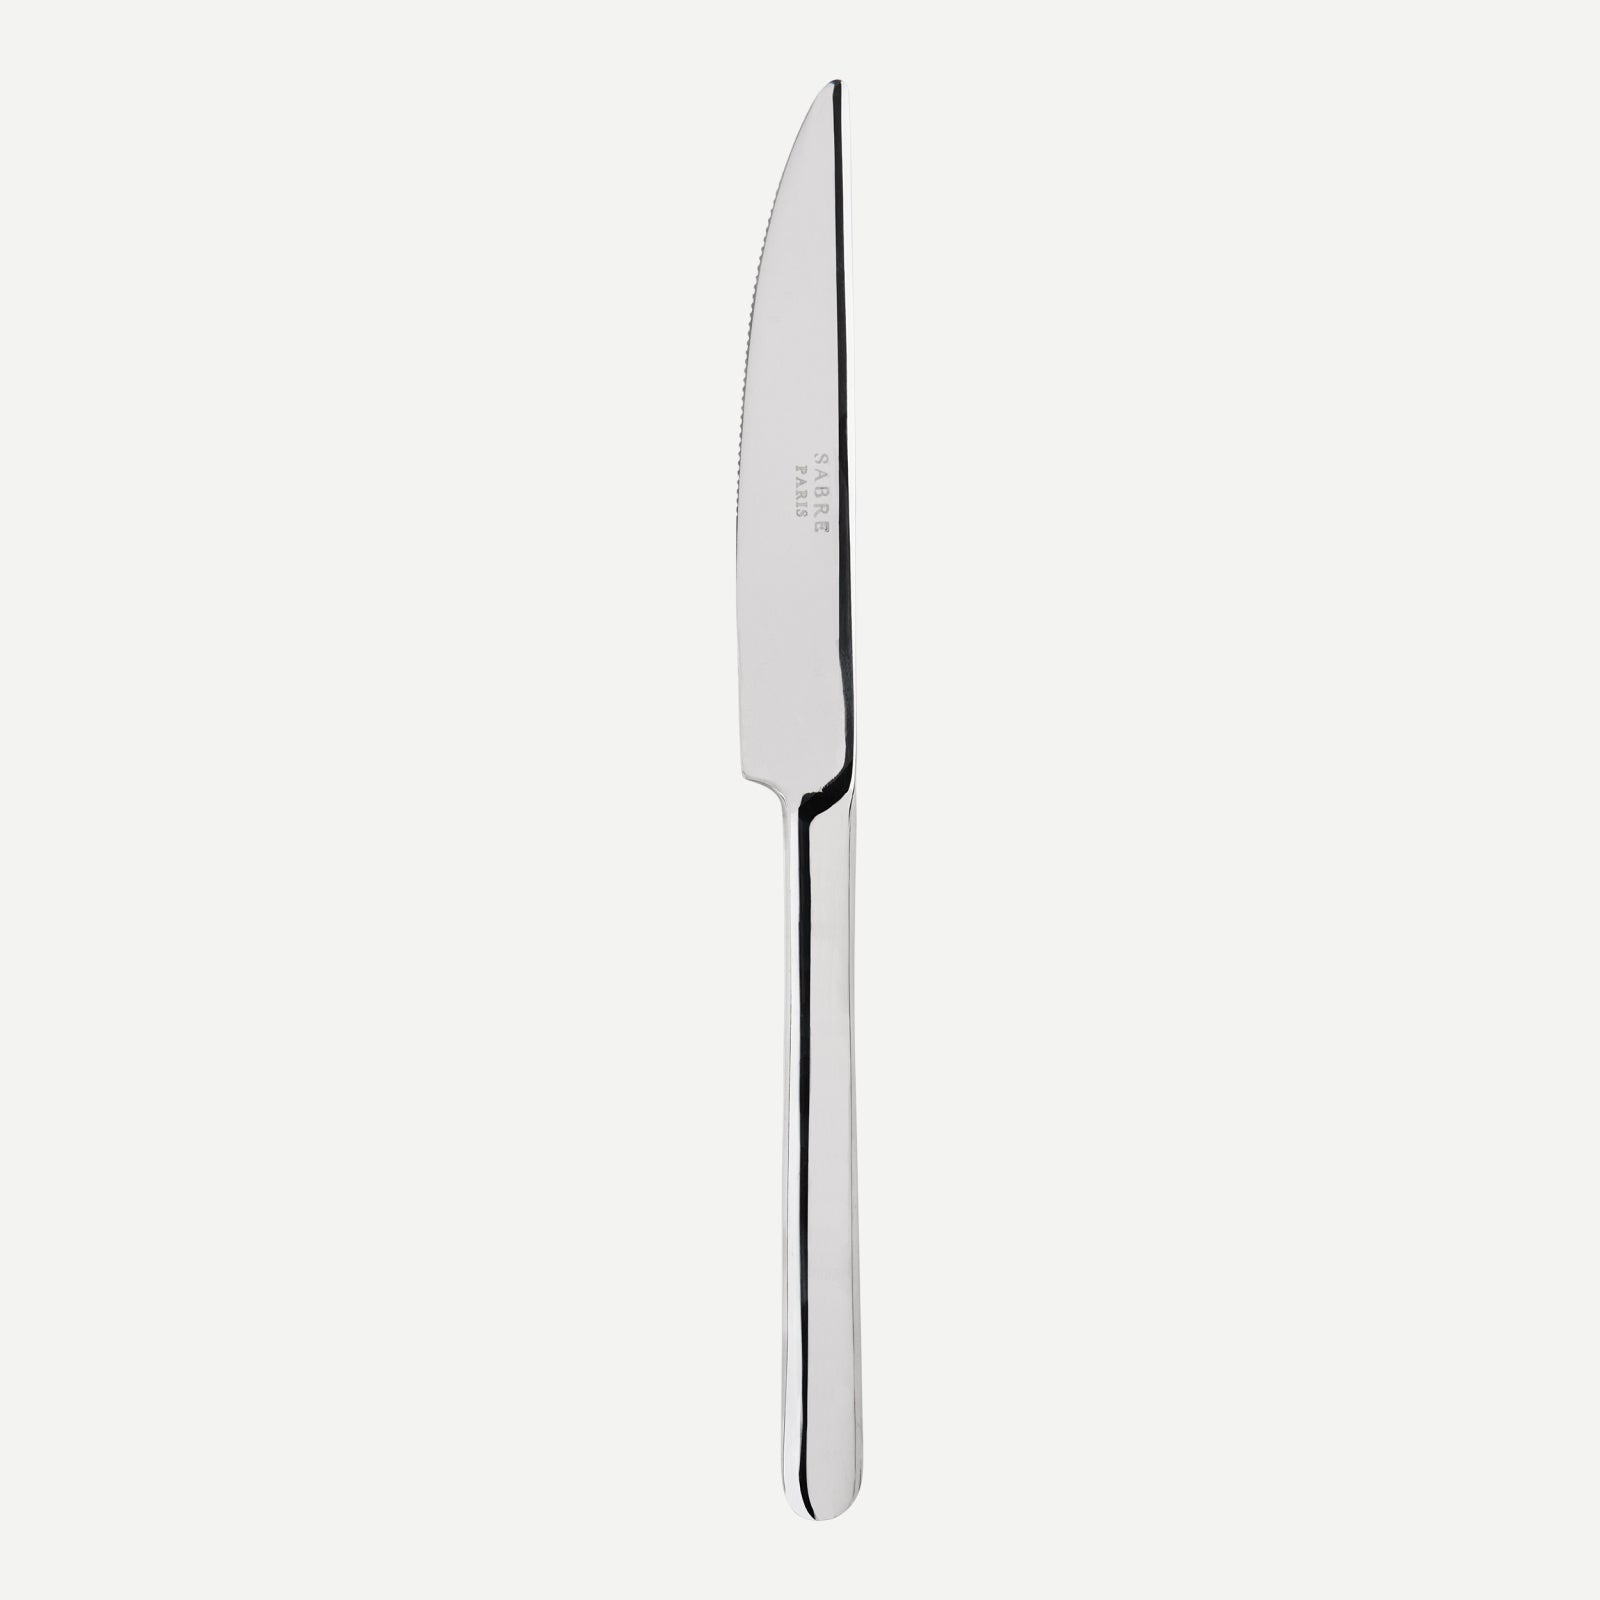 Dinner knife - Loft - Stainless steel